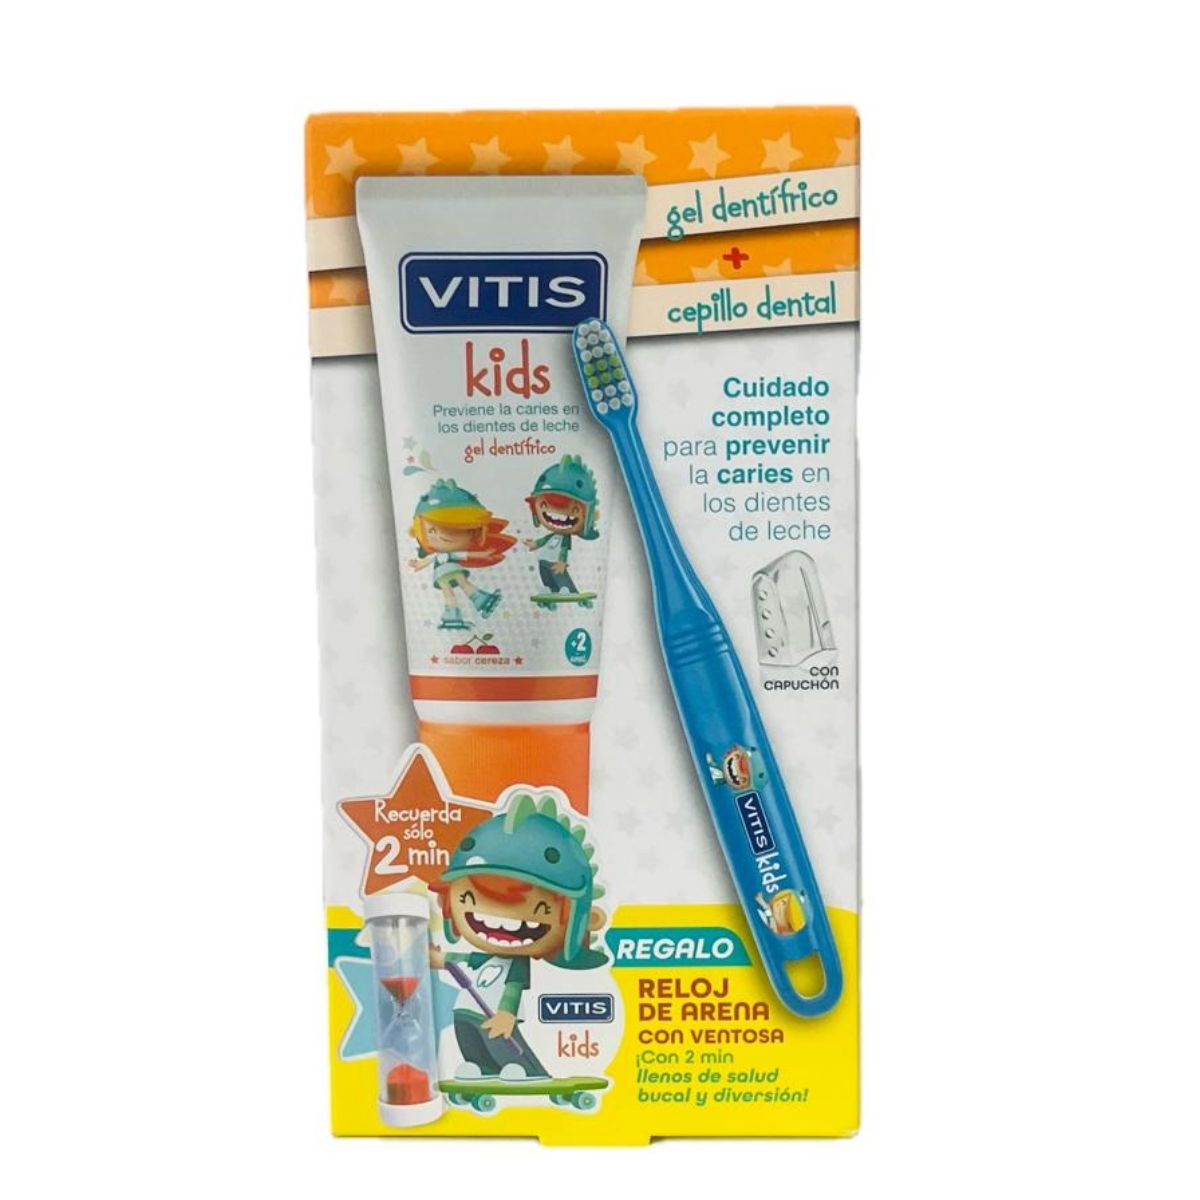 Pasta de dientes VITIS Junior para niños mayores de 6 años- VITIS